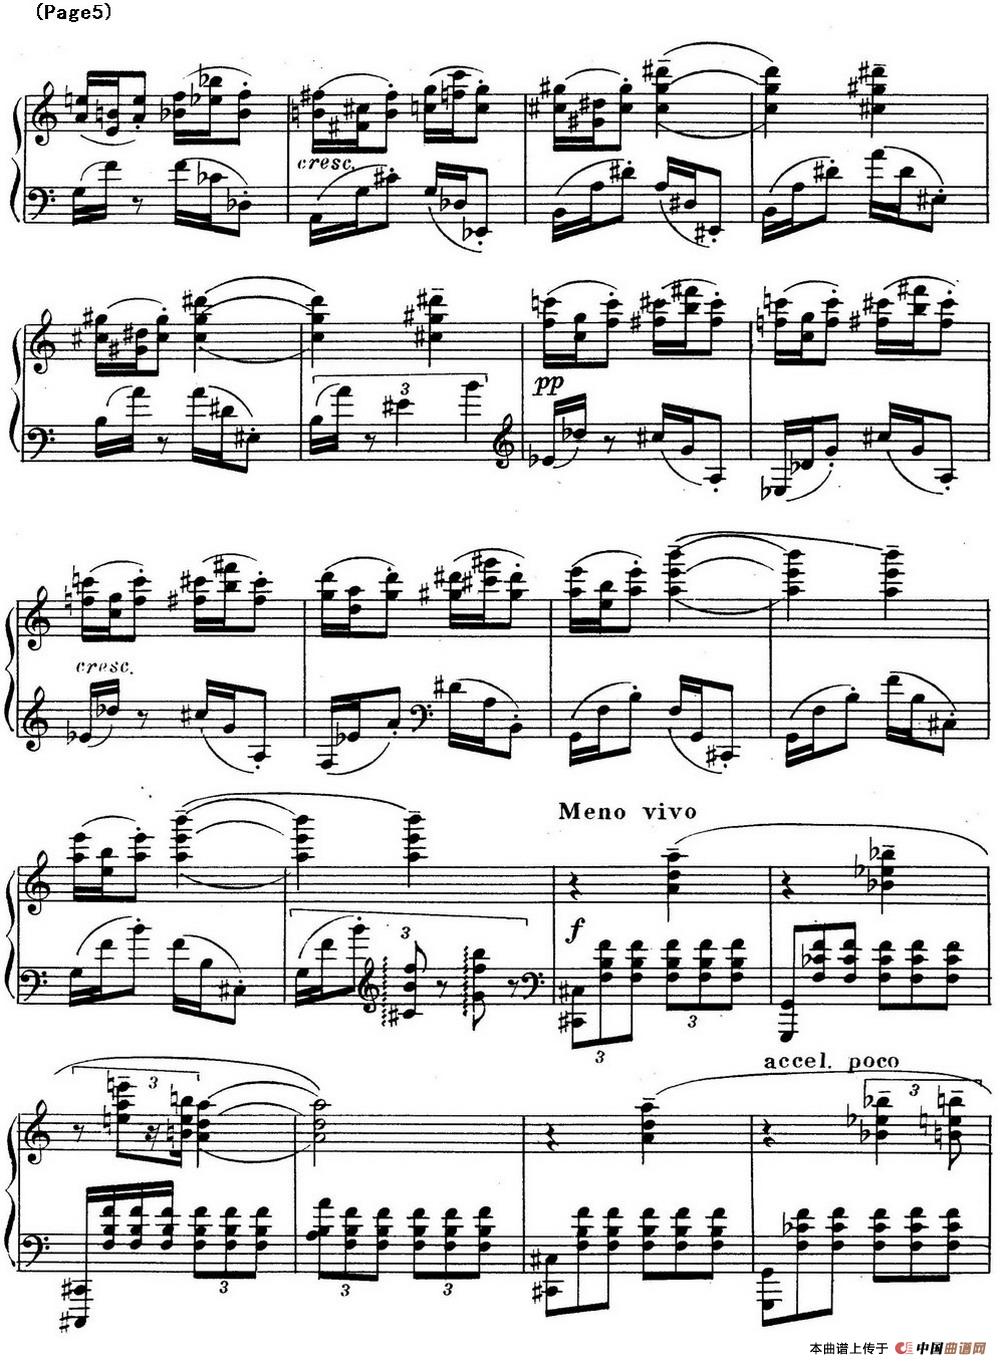 斯克里亚宾3首钢琴练习曲 Op65（No.3）(1)_Scriabin Etude Op.65 No.3_页面_5.jpg